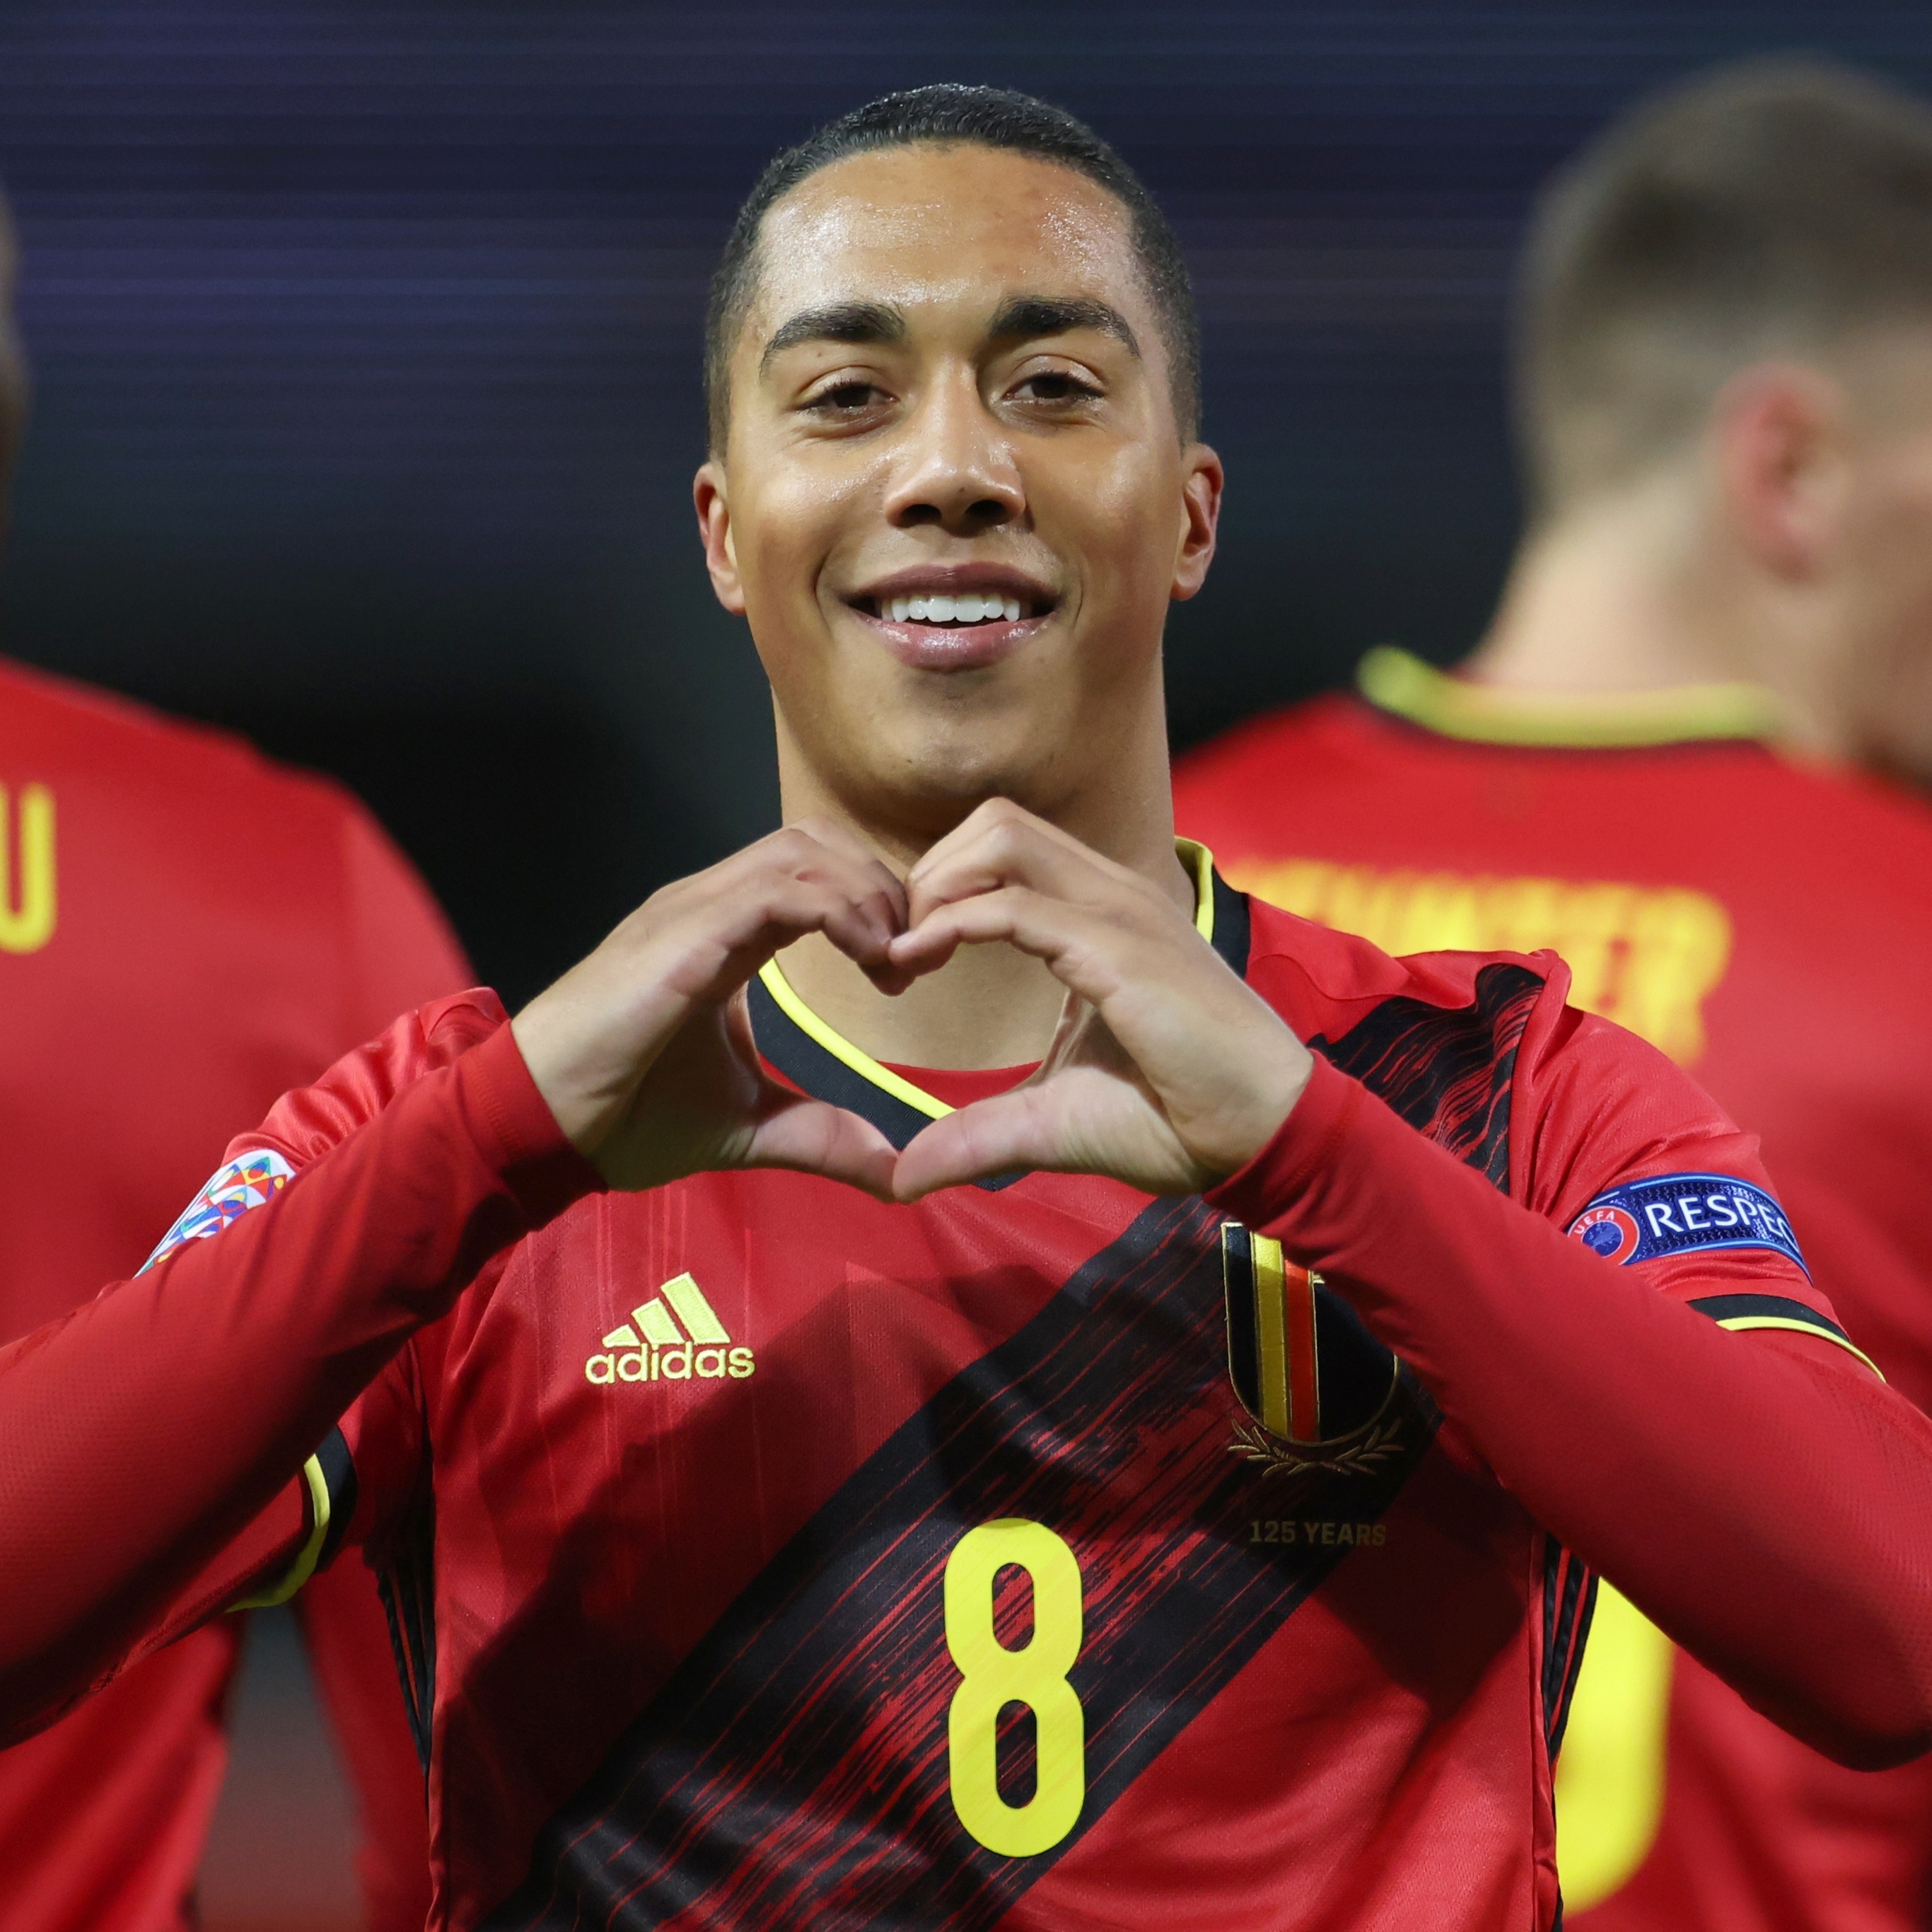 BeNe League: Bélgica e Holanda estão em tratativas para uma liga